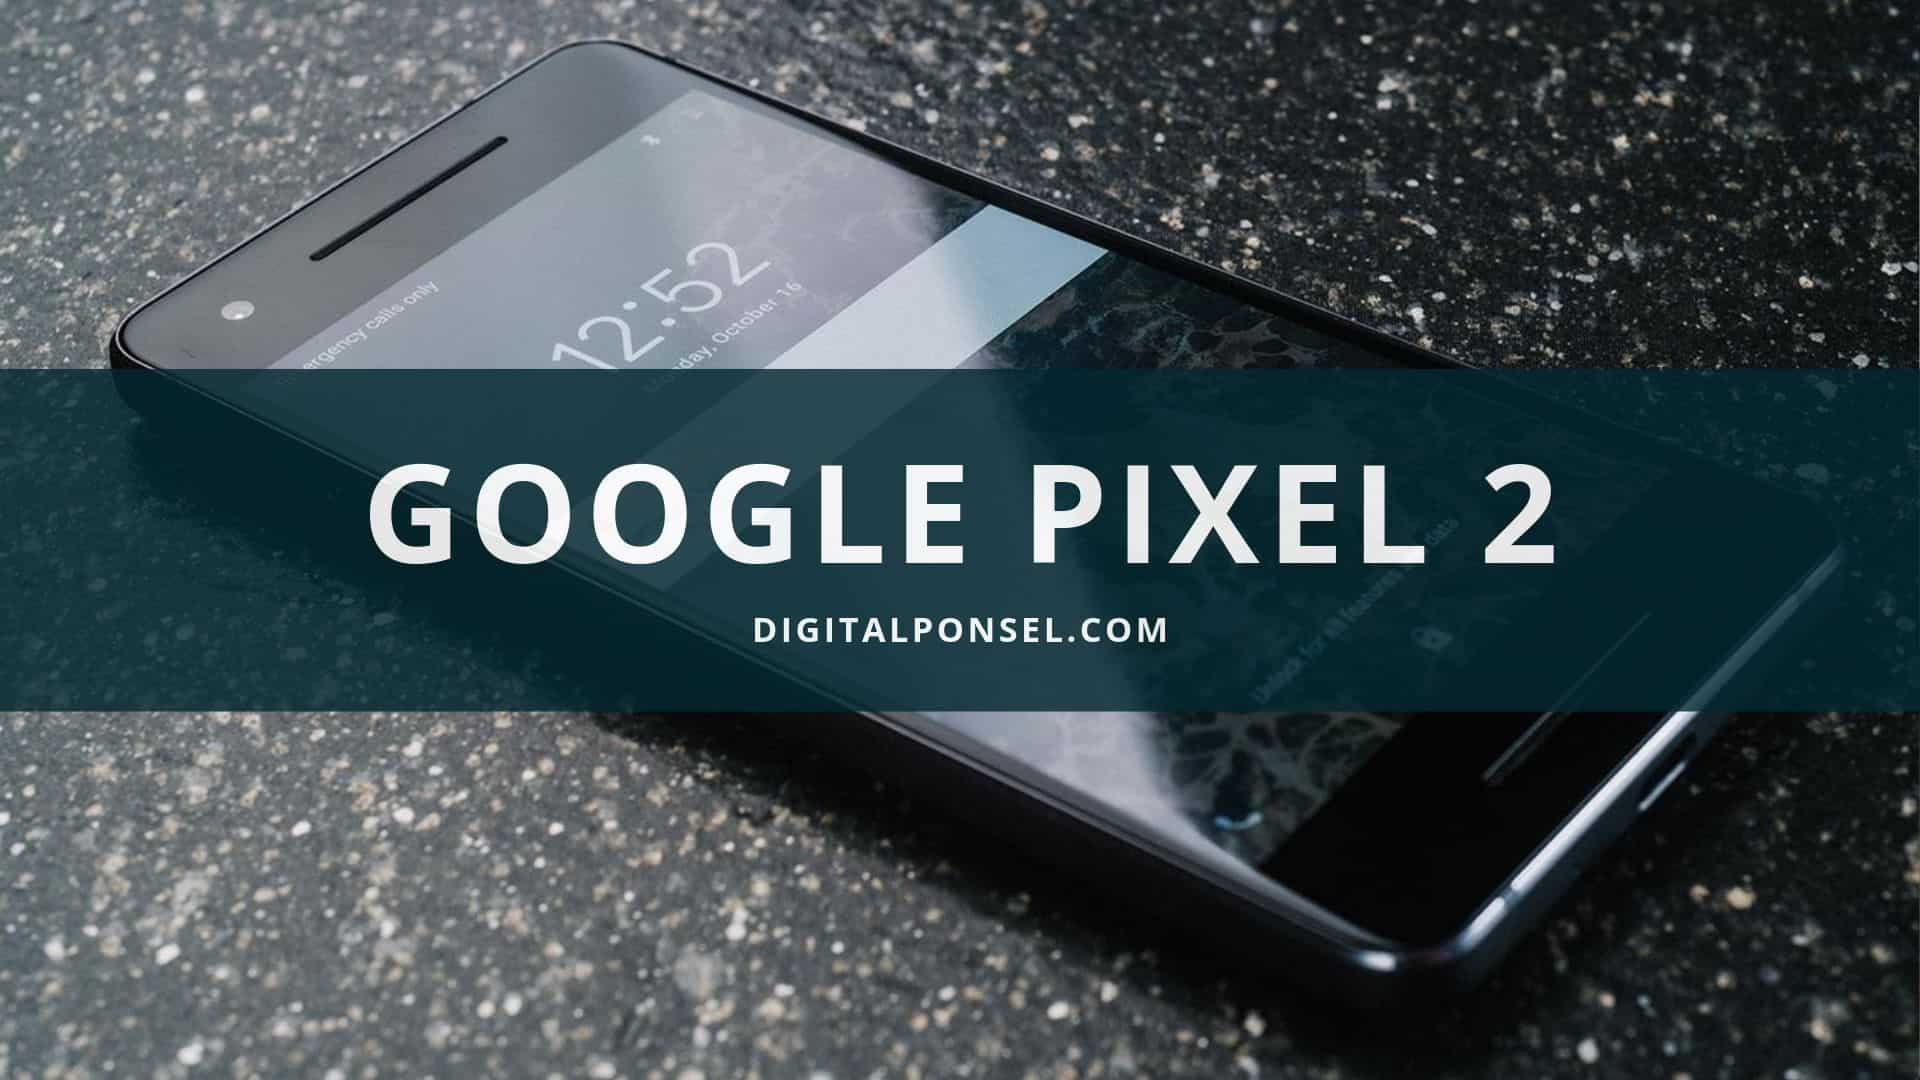 Kelebihan dan kekurangan Google Pixel 2